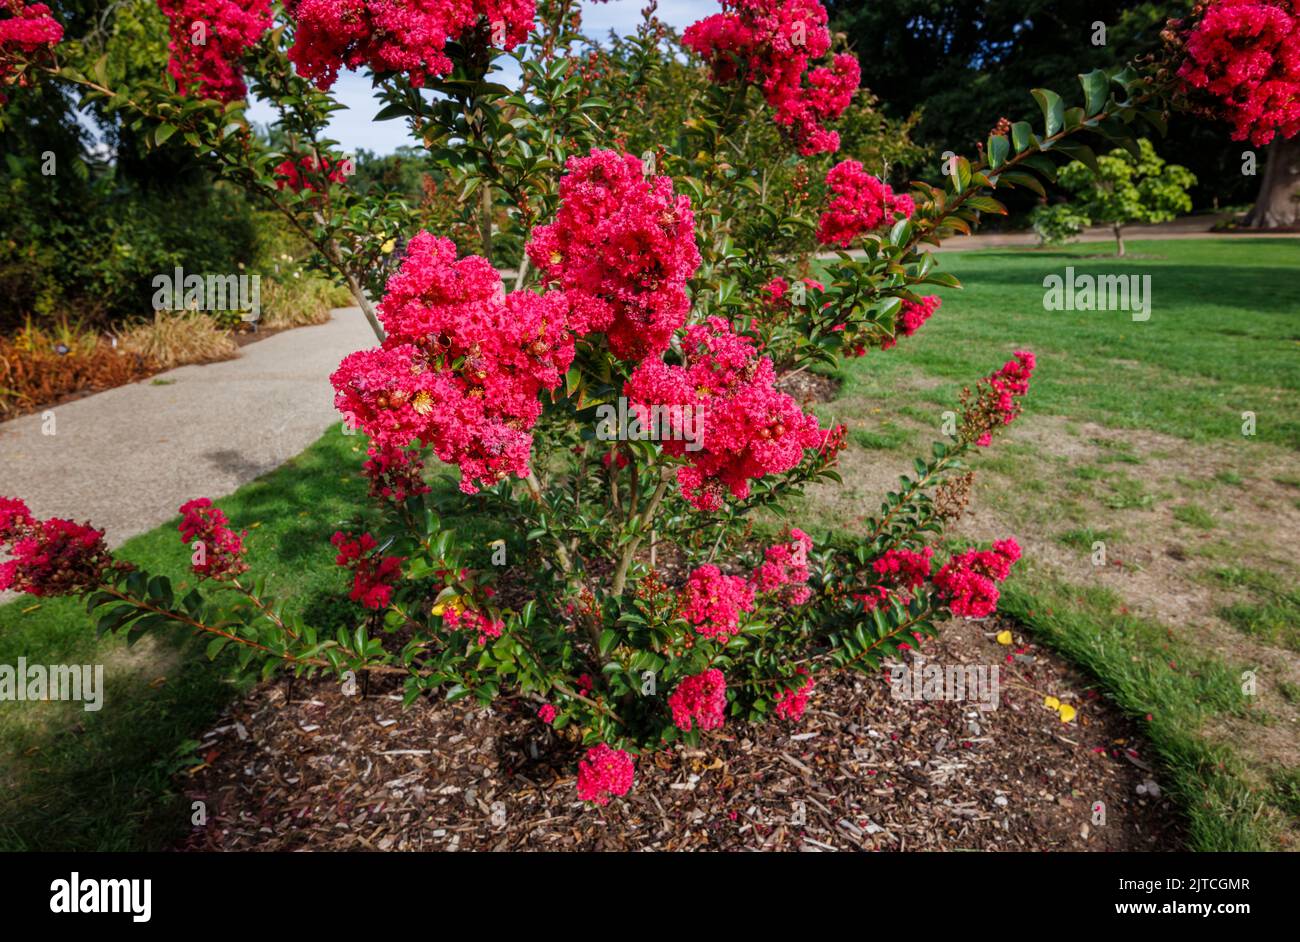 Lagerstroemia rouge 'Tuscarora' ou myrte de colza 'Tuscarora' avec fleurs rouges à roses de corail en fleur à RHS Garden, Wisley à la fin de l'été jusqu'au début de l'automne Banque D'Images